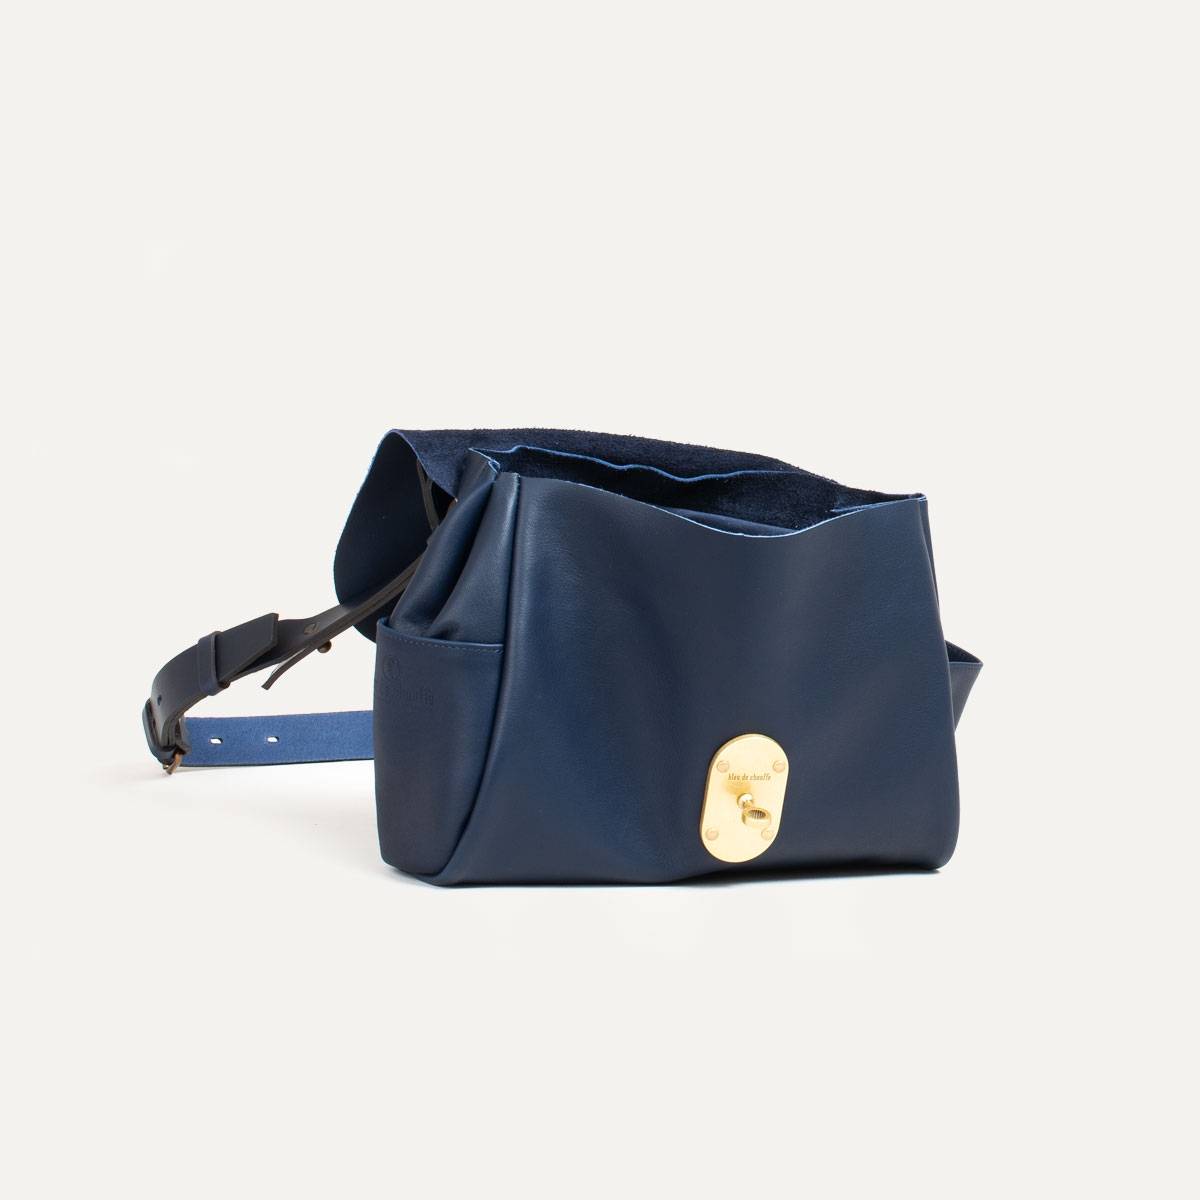 Fauré Le Page - Calibre Soft 17 Shoulder Bag - Paris Blue Scale Canvas & Navy Leather